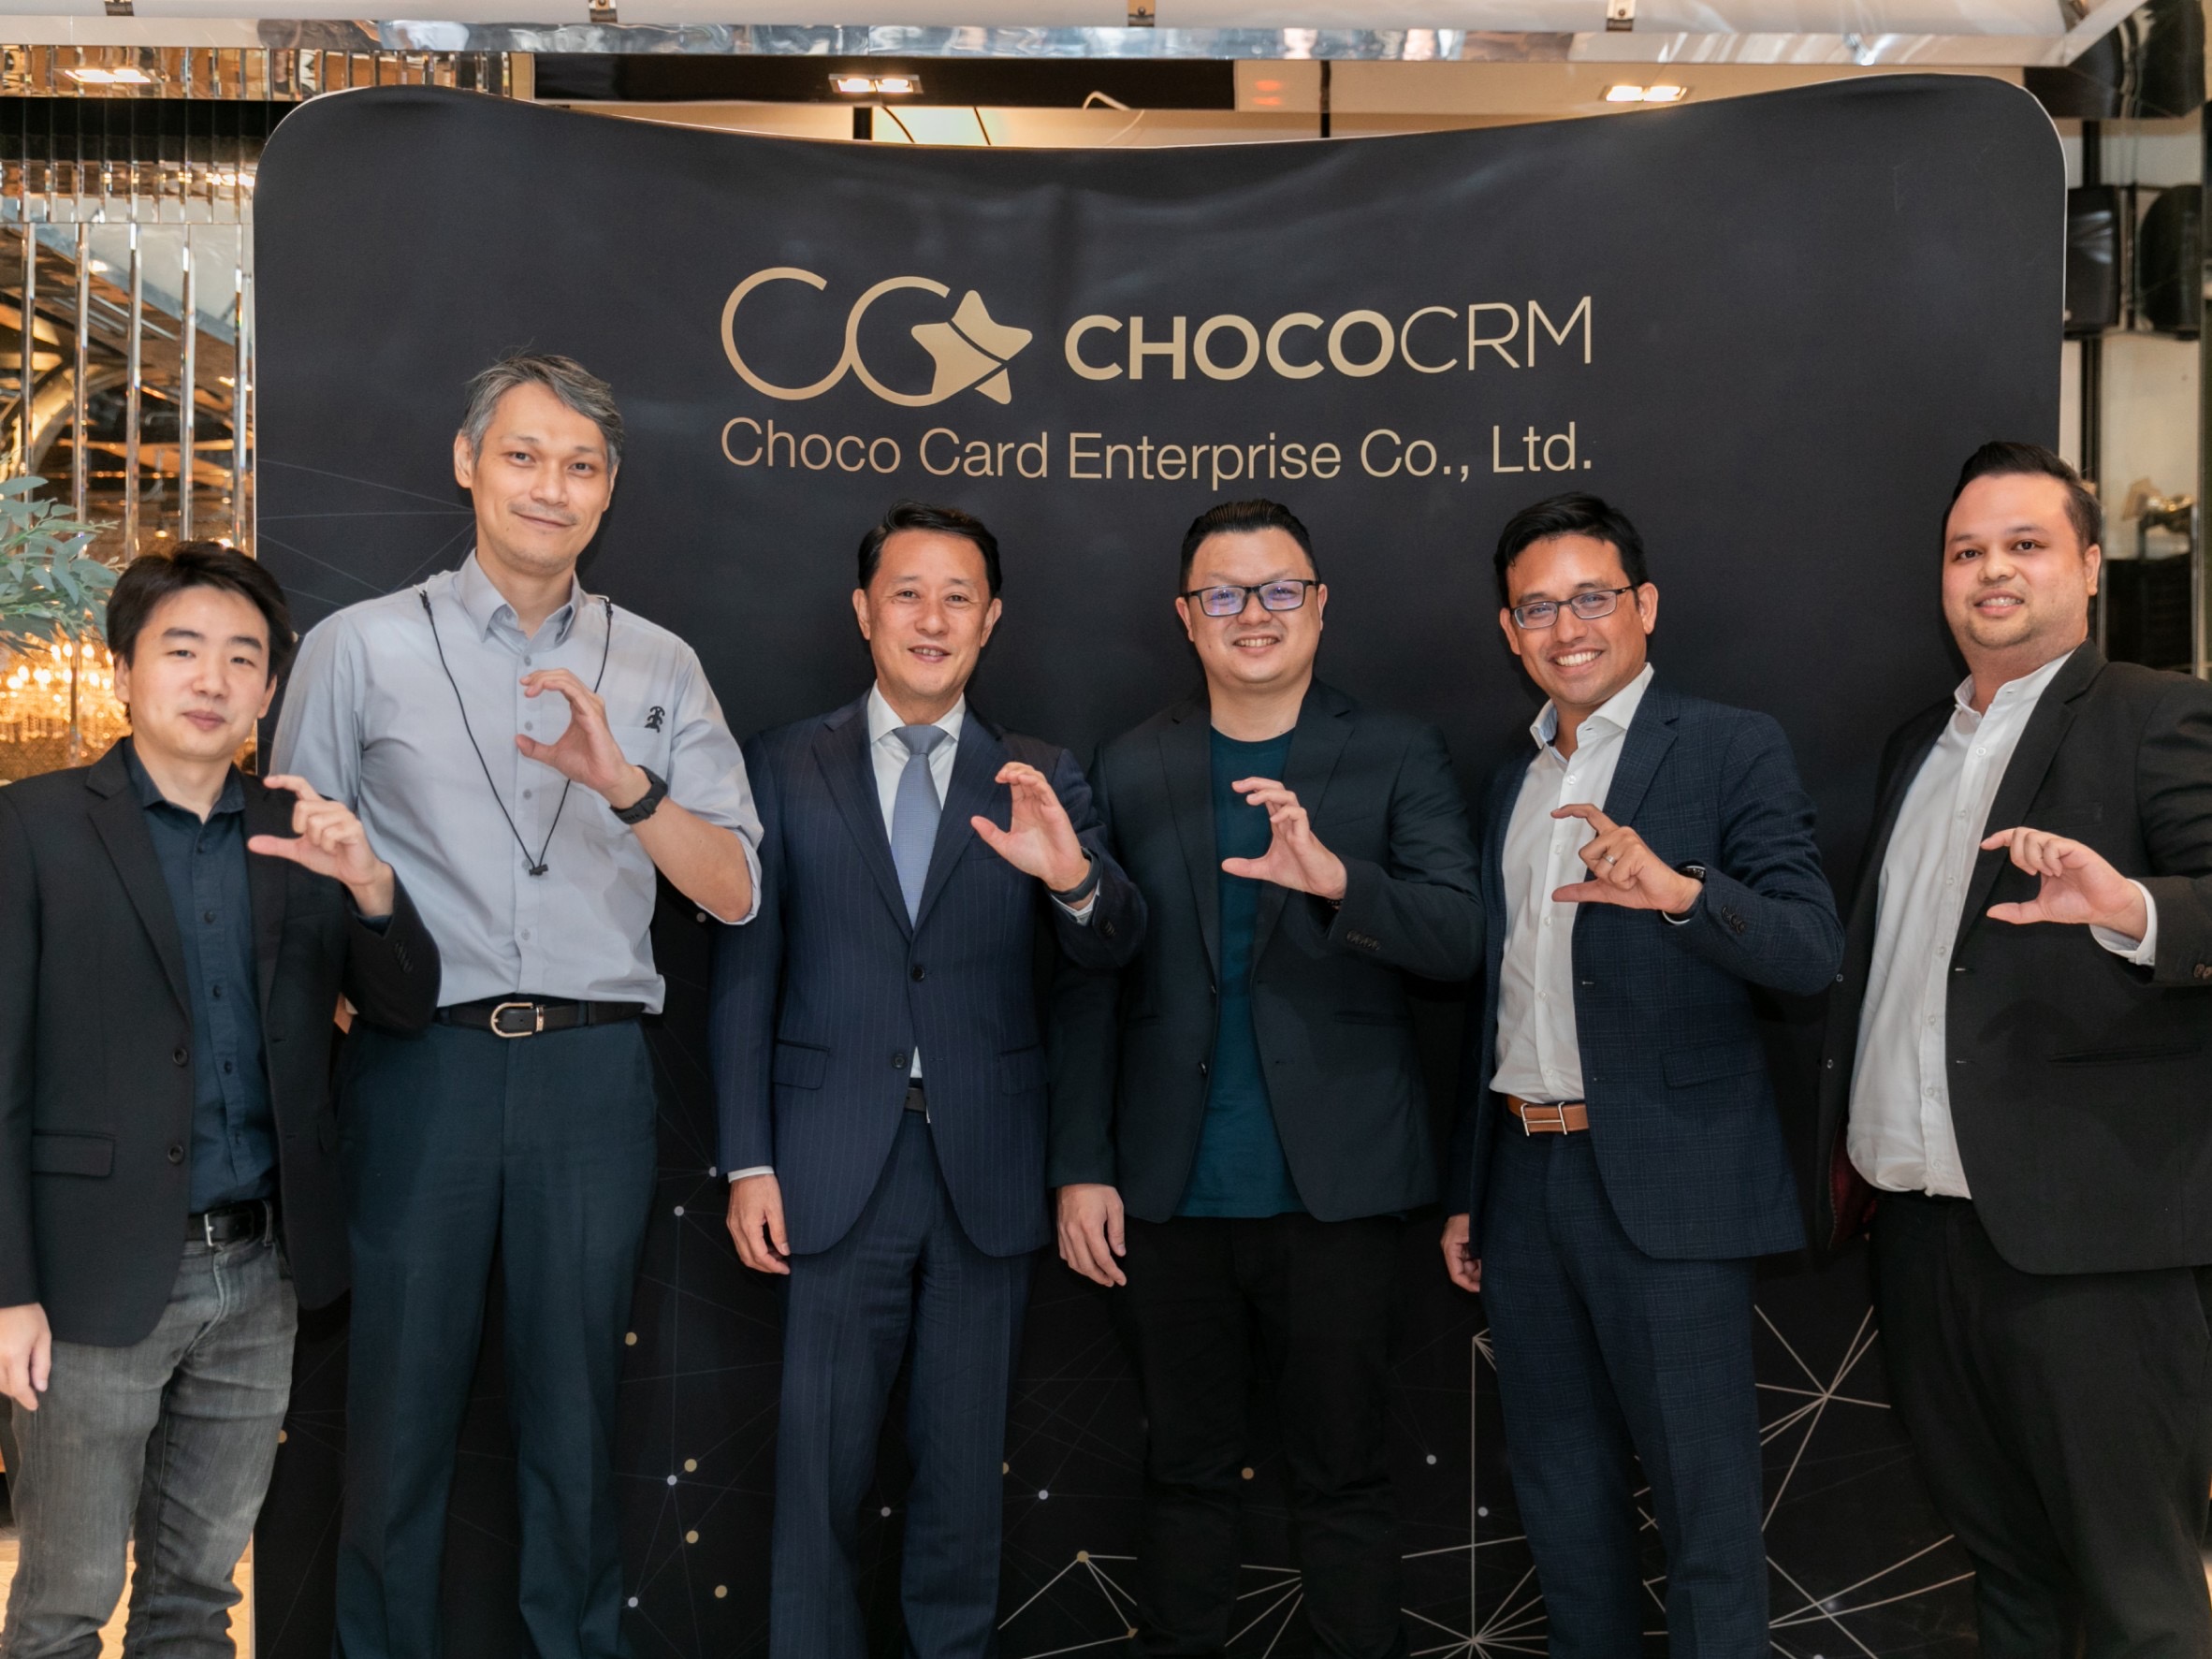 ChocoCRM พร้อมทะยานสู่การเป็นที่หนึ่งด้าน CRM และ CDP ผนึกกำลัง 3 พาร์ทเนอร์ใหญ่  เทค แมทริกซ์, ฟินโนเวนเจอร์ ไพรเวท อิควิตี้ ทรัสต์ 1 และ อินโนสเปซ (ประเทศไทย) ร่วมทุนใน Series C มูลค่ากว่า 8 ล้านเหรียญสหรัฐ